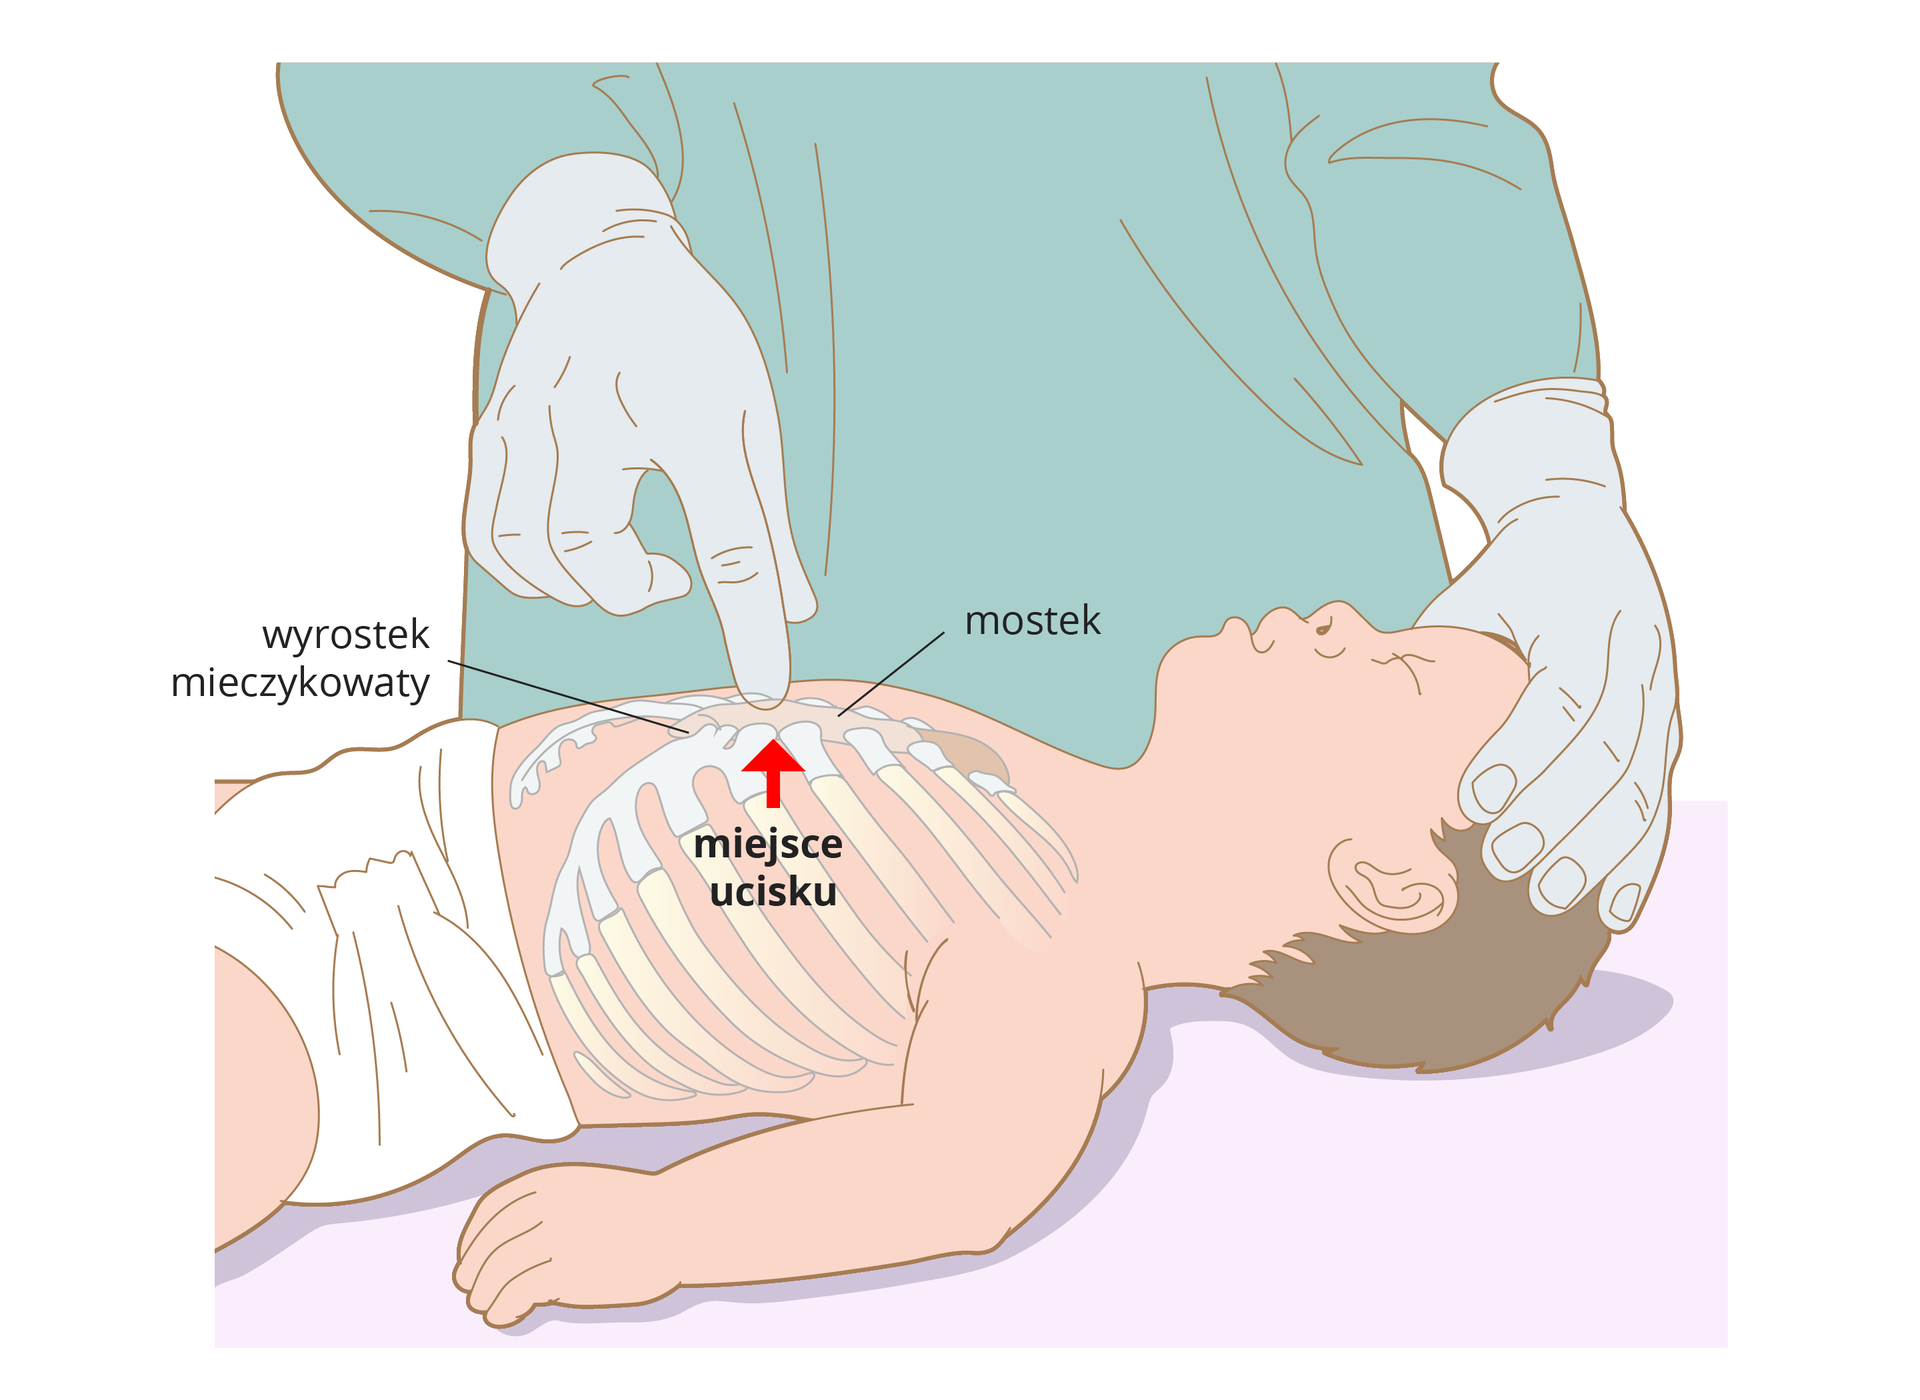 Ilustracja przedstawia niemowlę leżące na plecach bokiem do obserwatora. Niemowlę bez ubranka w samej pieluszce. Głowa dziecka ułożona po prawej stronie. Głowę przytrzymuje lekarz. Drugą ręką wskazuje na klatkę piersiową dziecka. Na ilustracji zaznaczone są żebra i mostek na klatce piersiowej dziecka. Czerwona pionowa strzałka wskazuje miejsce ucisku znajdujące się w dolnej części mostka.